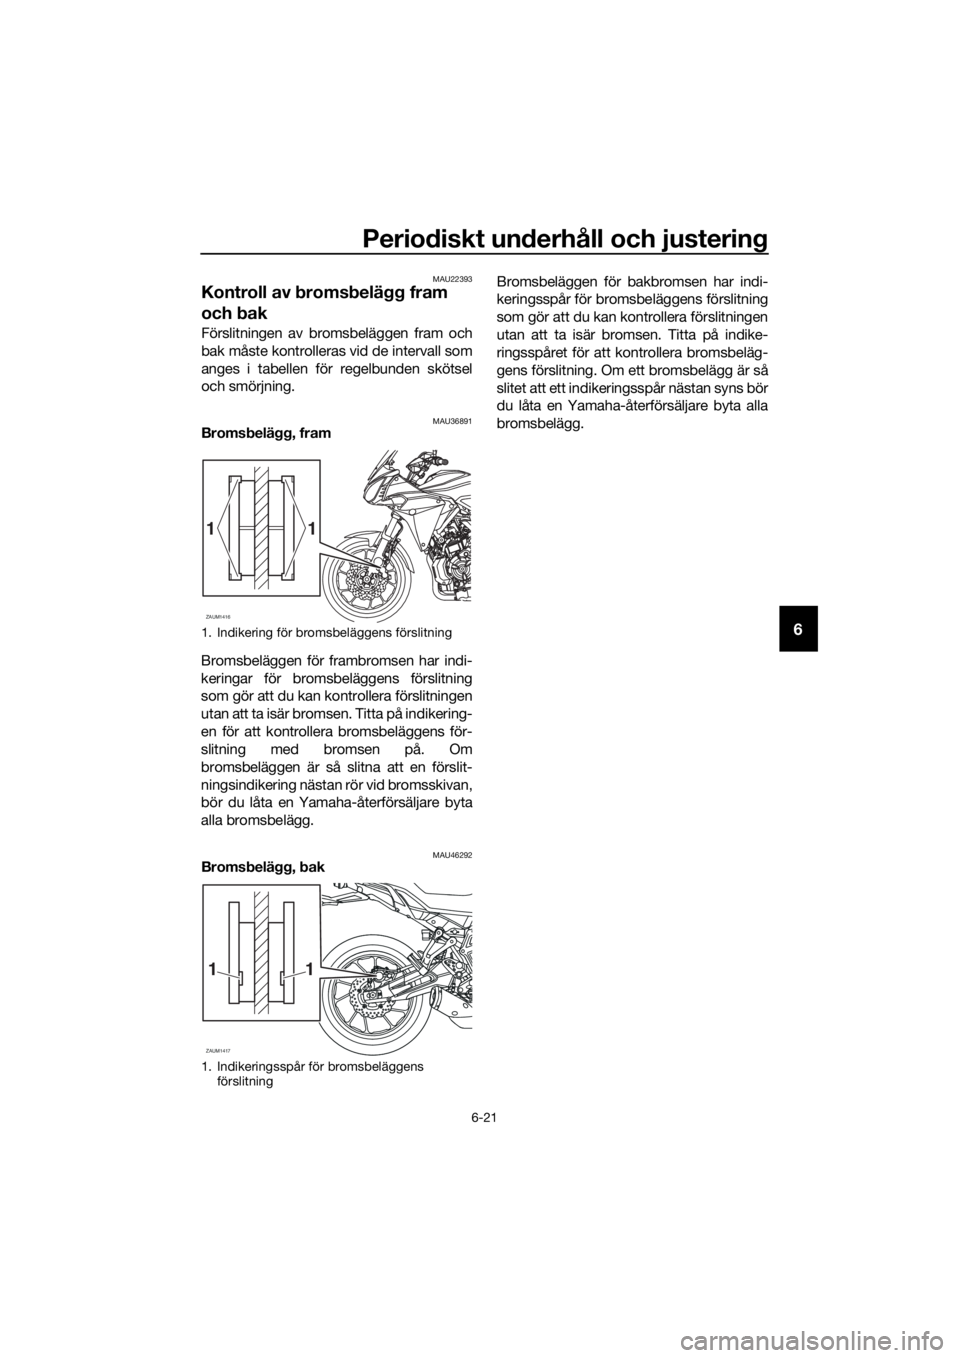 YAMAHA TRACER 700 2018  Bruksanvisningar (in Swedish) Periodiskt underhåll och justering
6-21
6
MAU22393
Kontroll av bromsbelägg fram 
och bak
Förslitningen av bromsbeläggen fram och
bak måste kontrolleras vid de intervall som
anges i tabellen för 